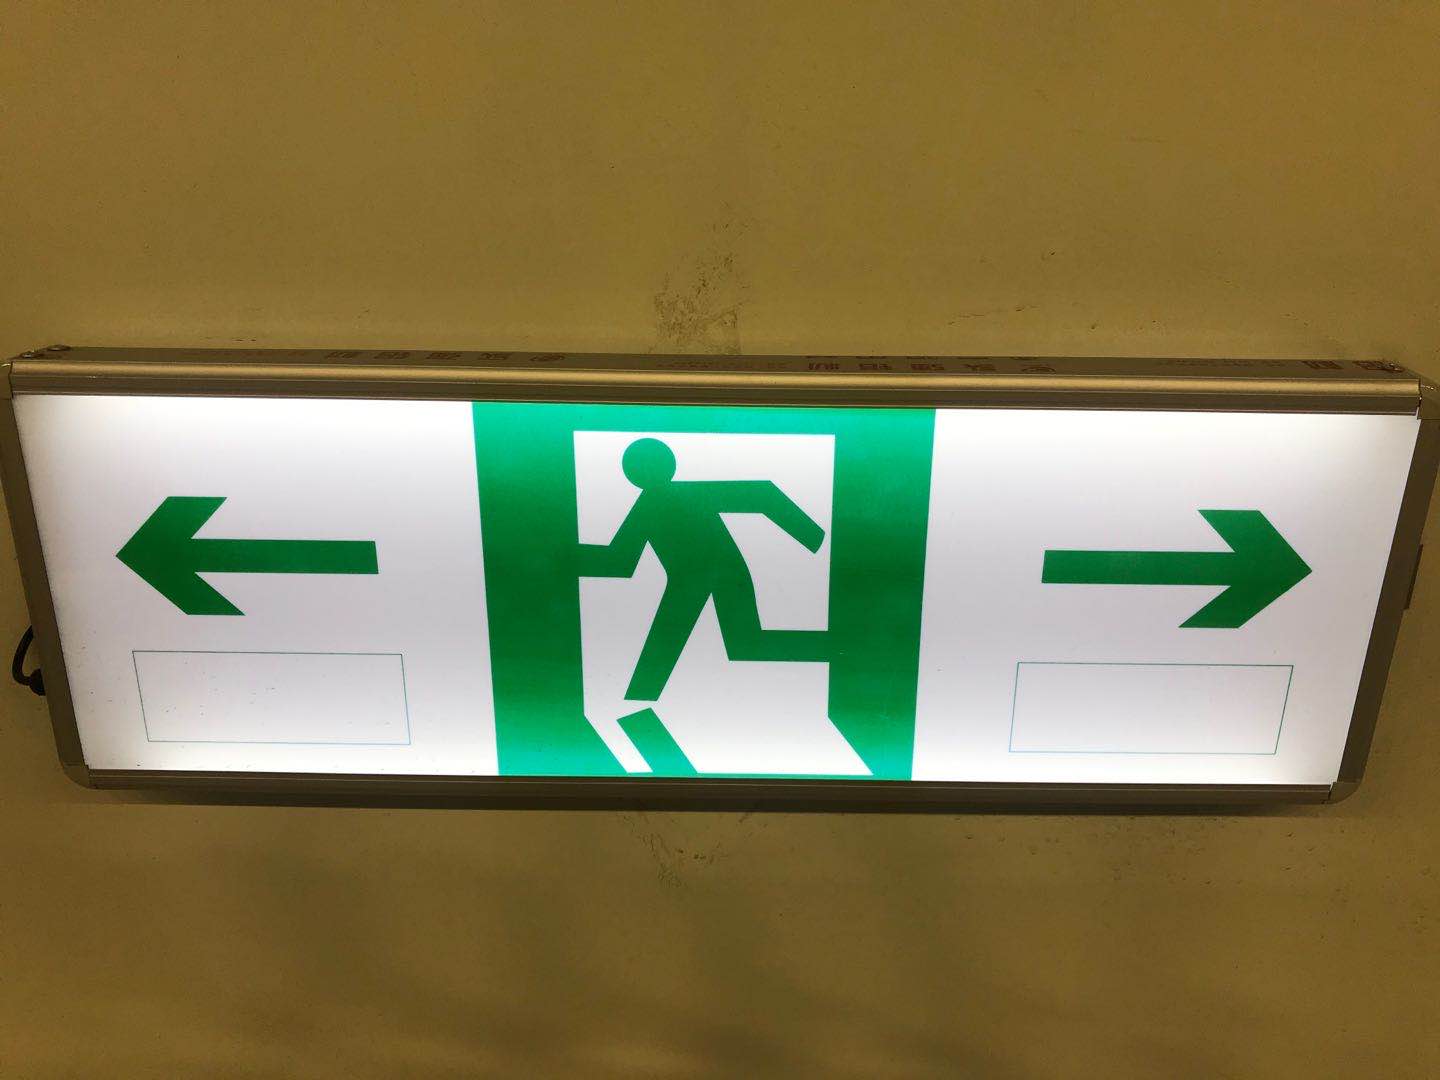 四川紧急疏散指示标志人行横洞指示标志紧急停车带指示标志